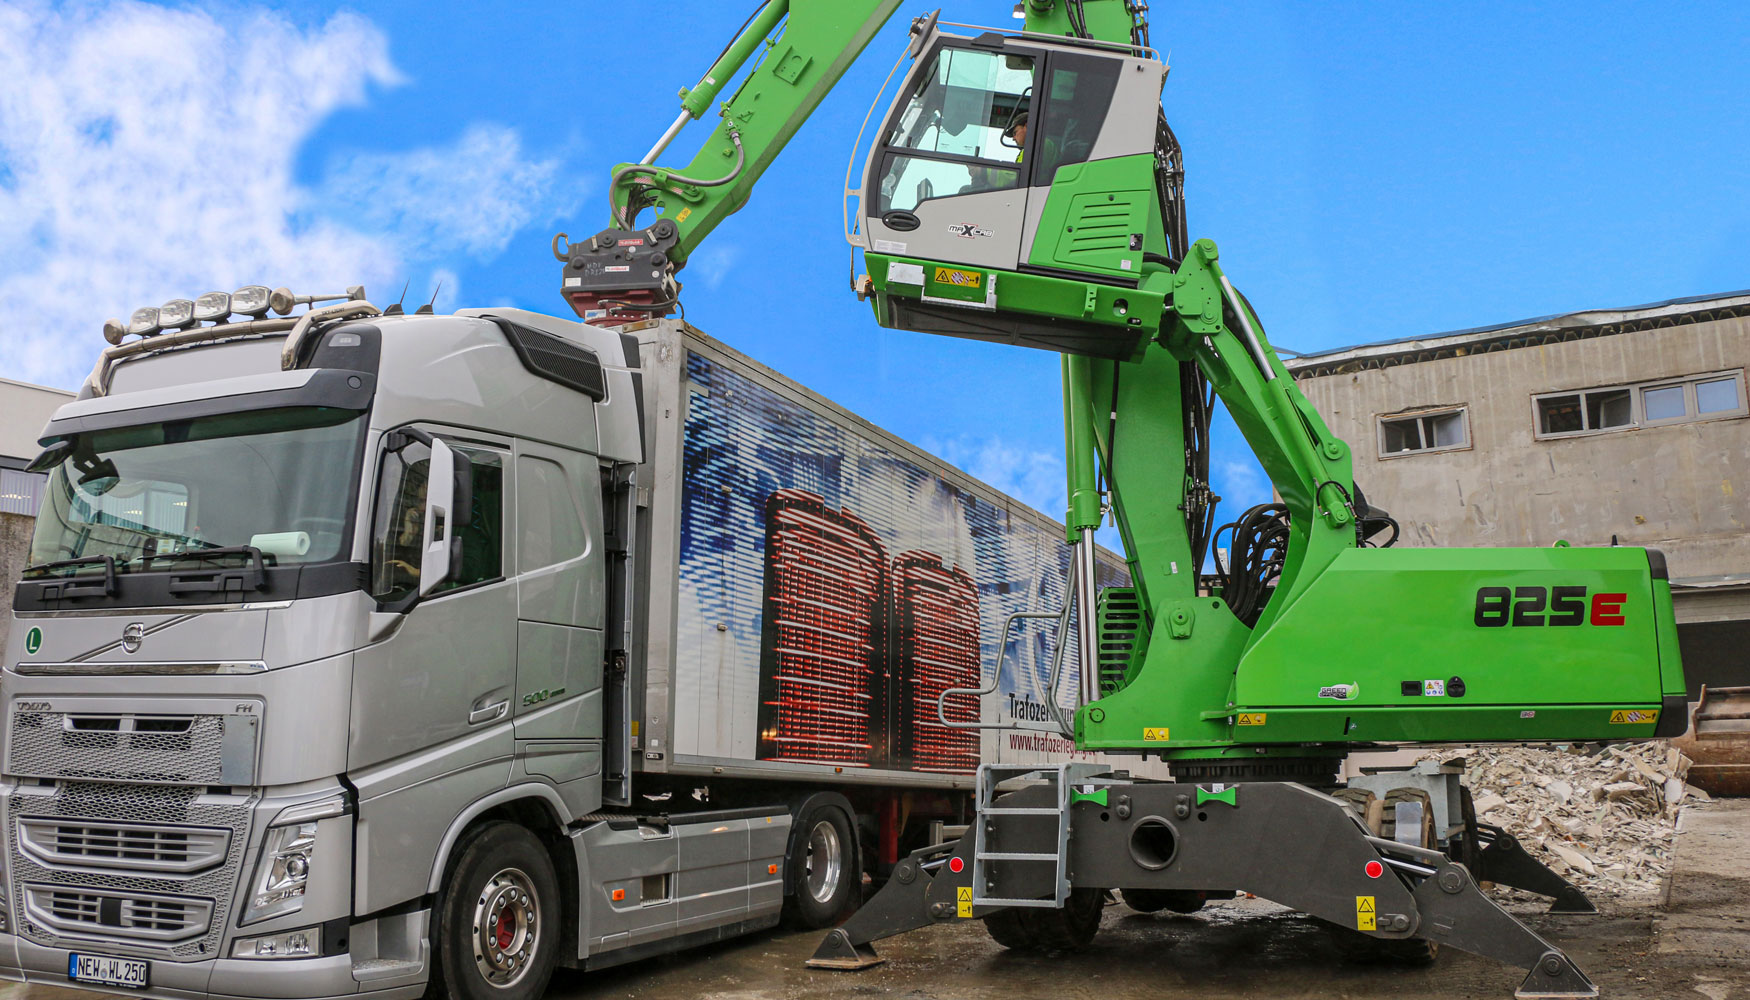 La cabina elevable permite tener una ptima visibilidad a la hora de cargar los residuos de la demolicin en los camiones...